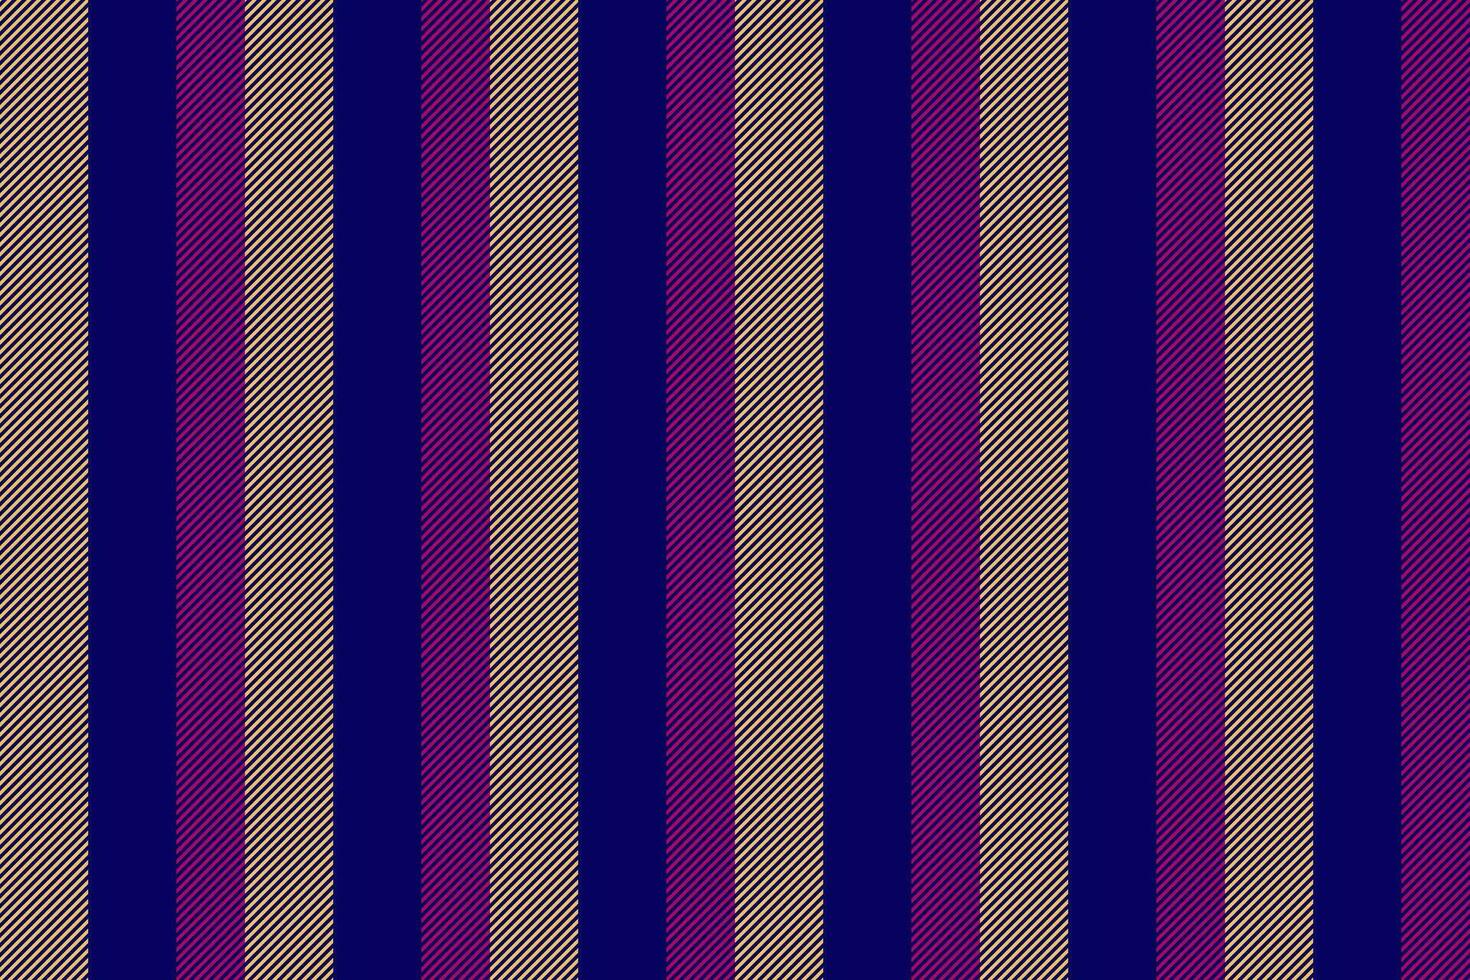 Werbung Linien nahtlos Hintergrund, kratzen Vertikale Vektor Muster. ethnisch Streifen Textur Stoff Textil- im Indigo und Bernstein Farben.